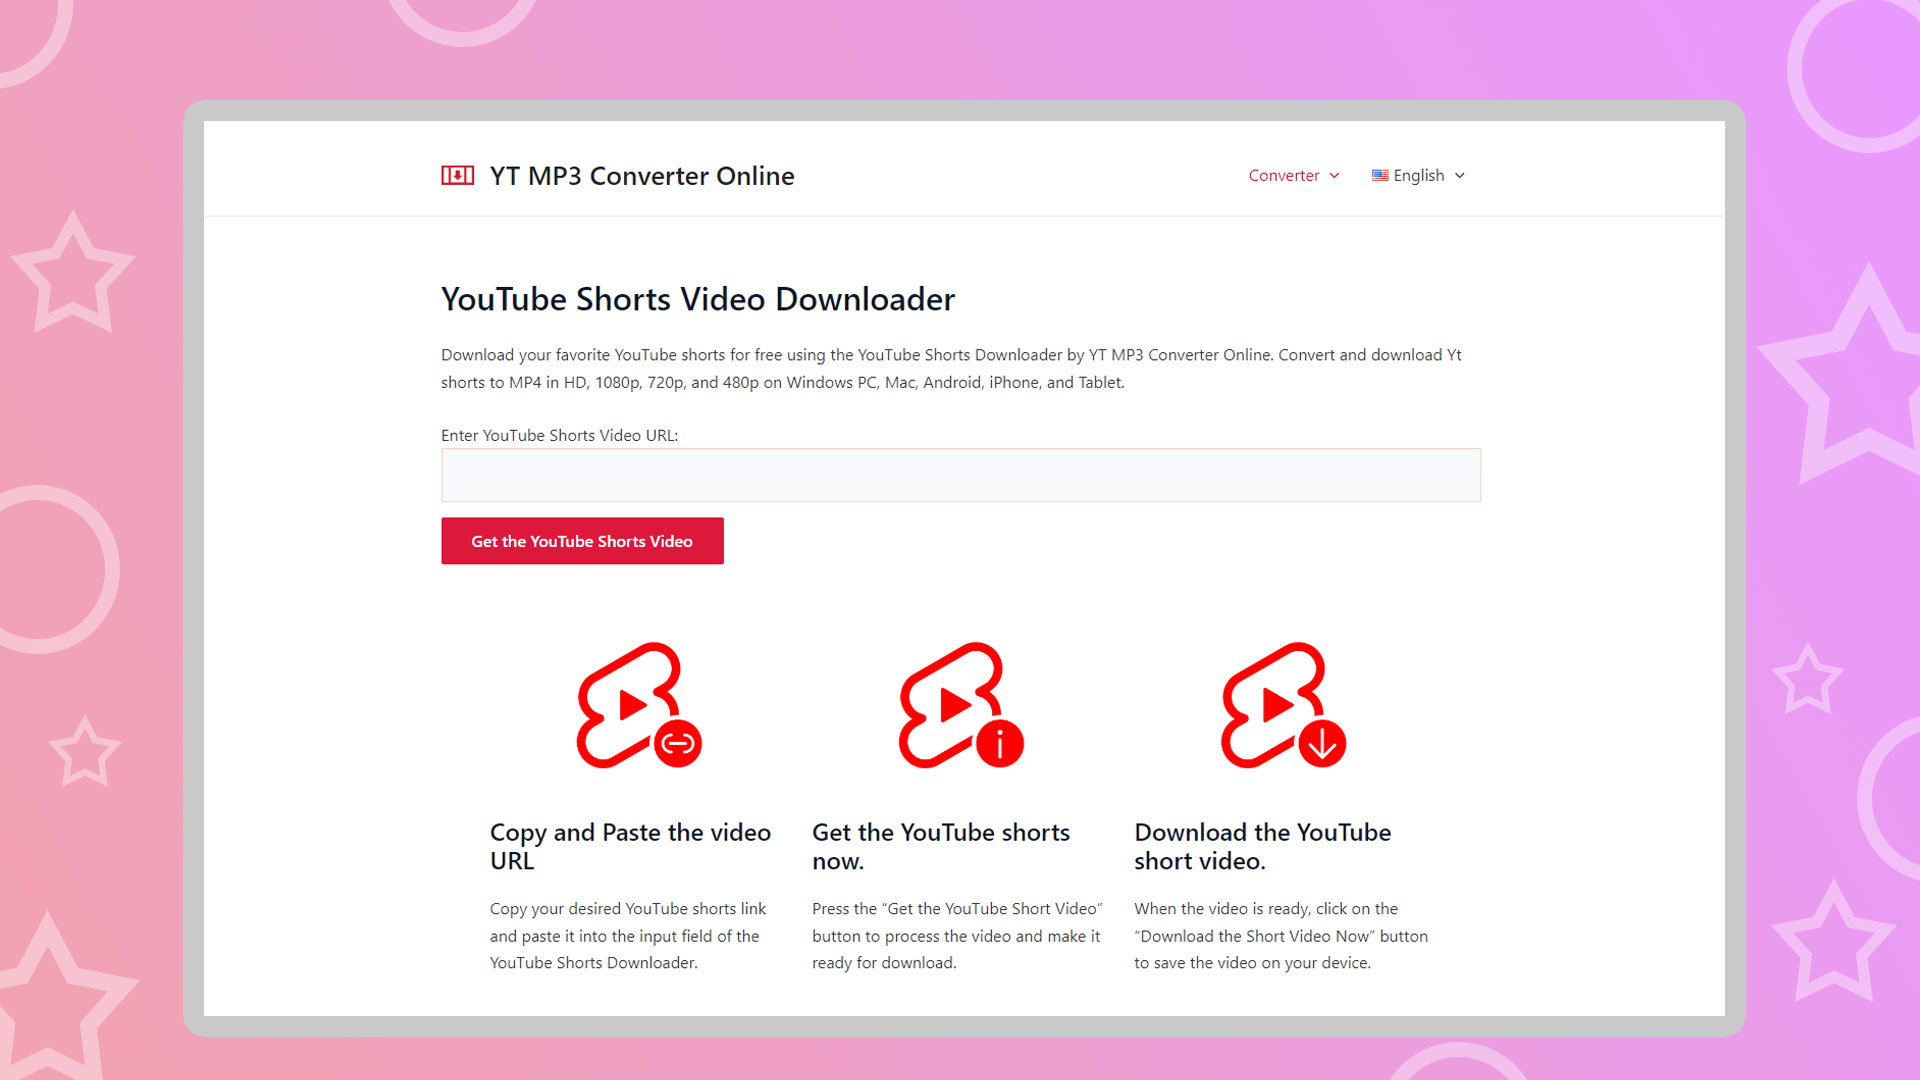 YT MP3 Converter Online YouTube Shorts Video Downloader